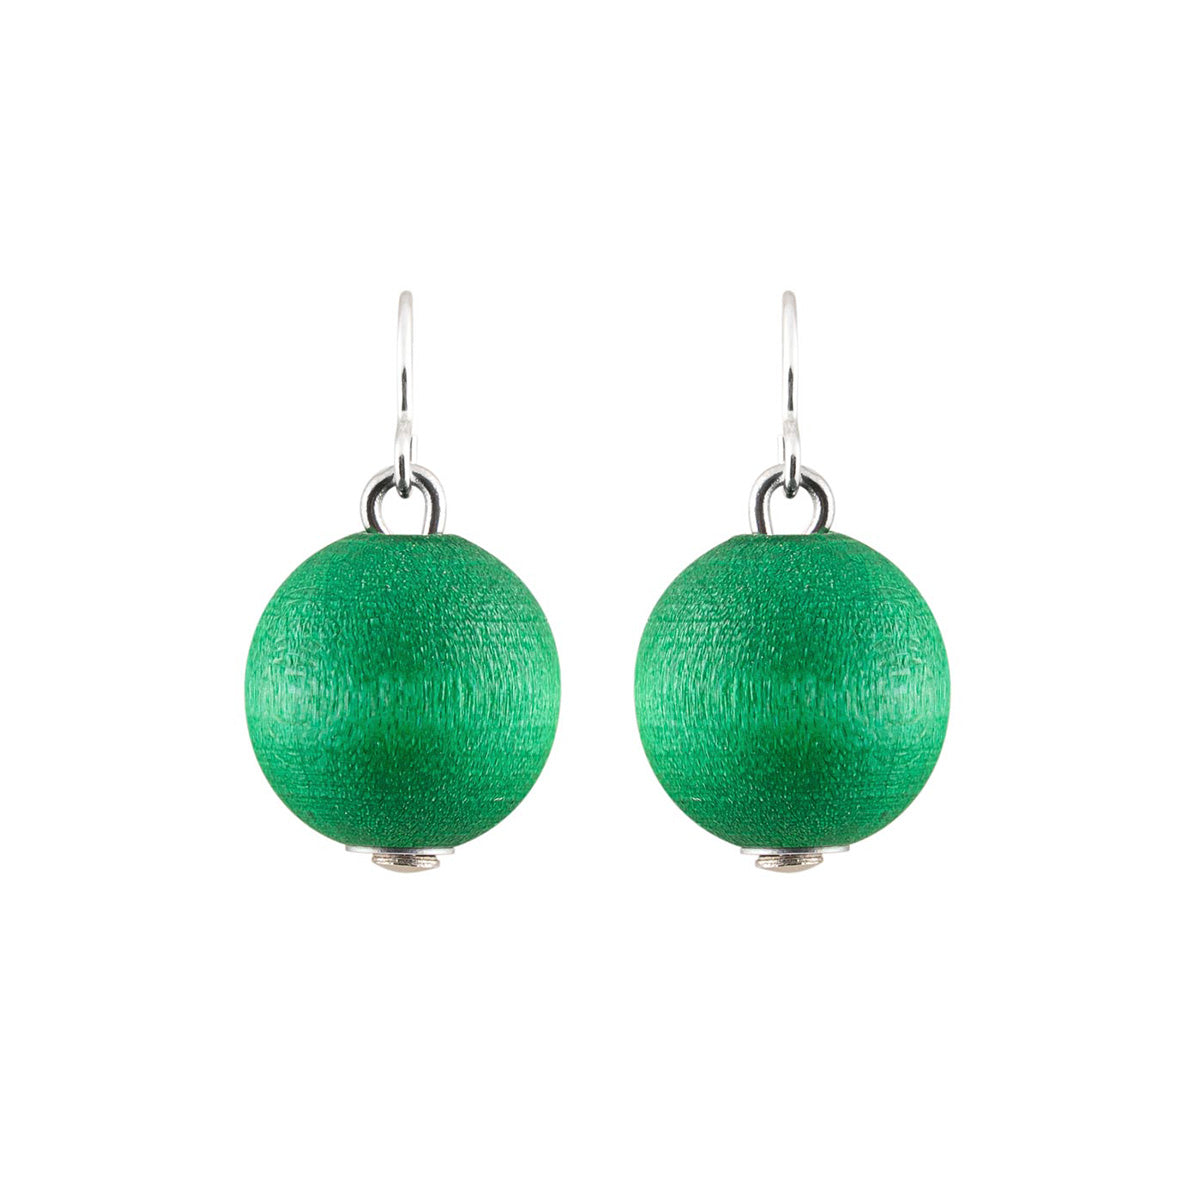 Karpalo earrings, green